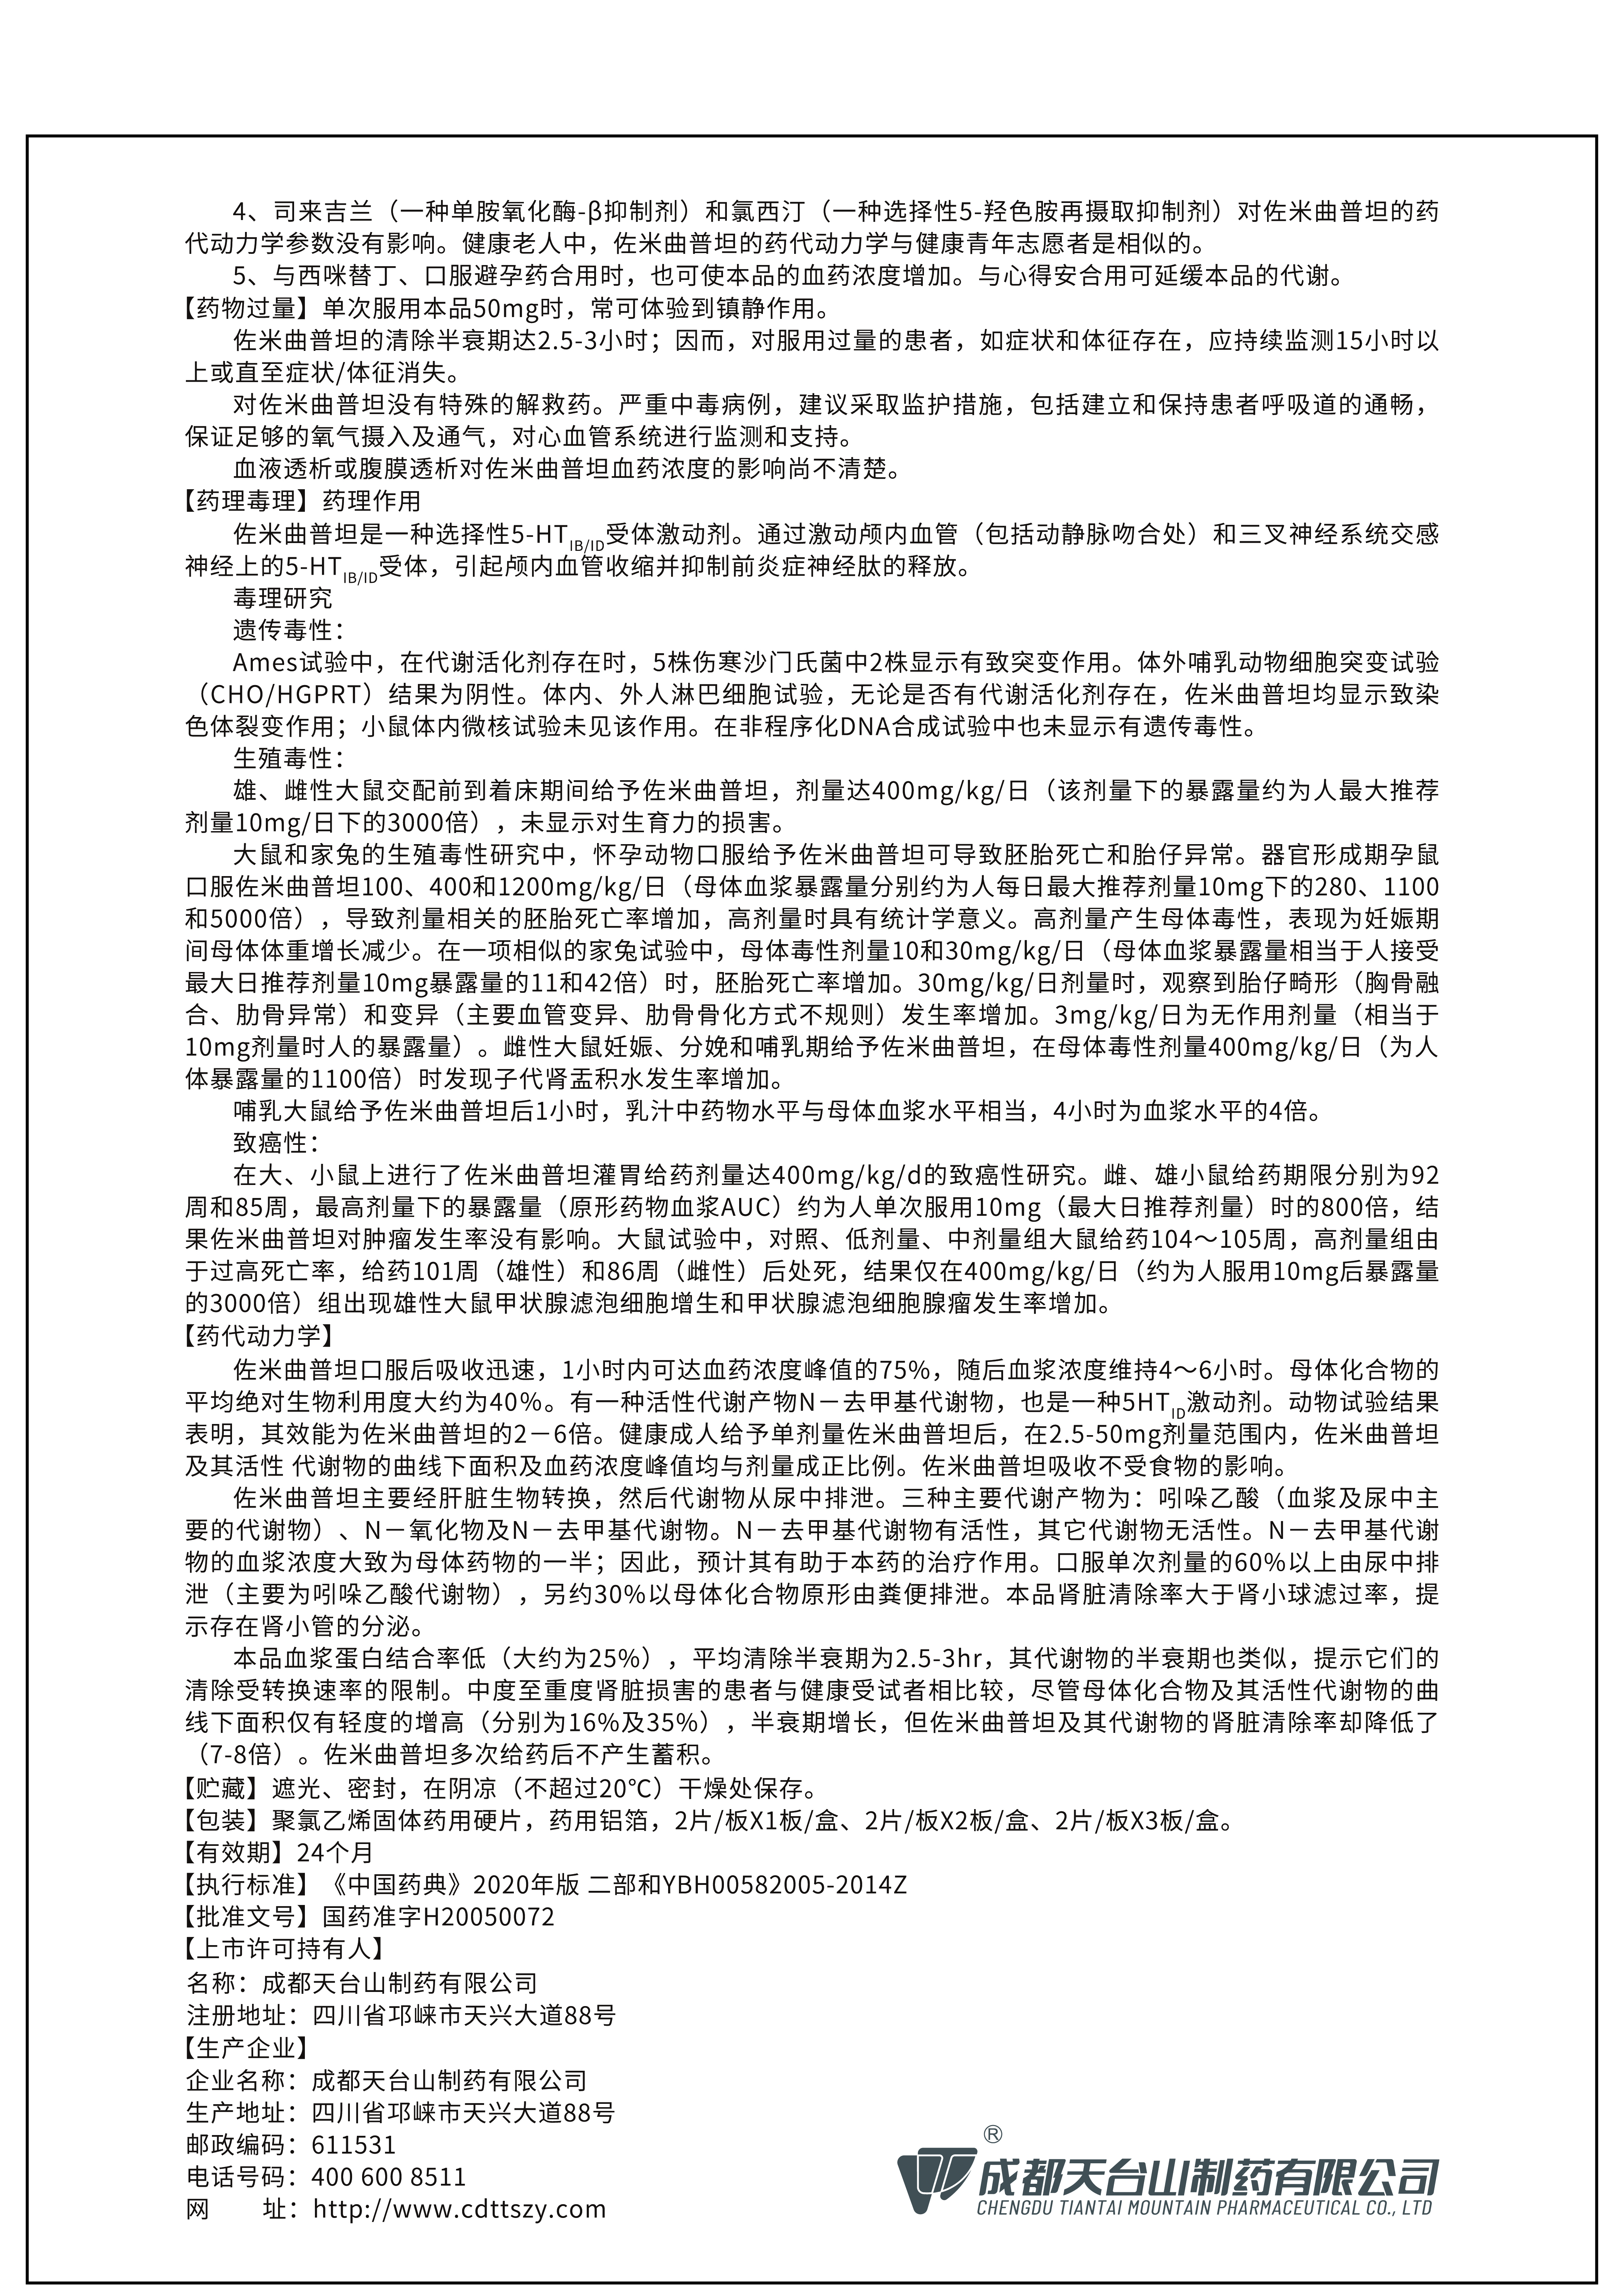 佐米曲普坦片说明书2    1、【执行标准】号改为《中国药典》2020年版二部和YBH00582005-2014Z     2、增加“上市许可持有人及地址”； 3、重新设计外包材的外观；4、新增包装规格； 5、更换外包材的注册商标。6、修改电话号码；   7、修改字体；8、规范【包装】项的书写；9、说明书【修订日期】2022年07月28日。.jpg